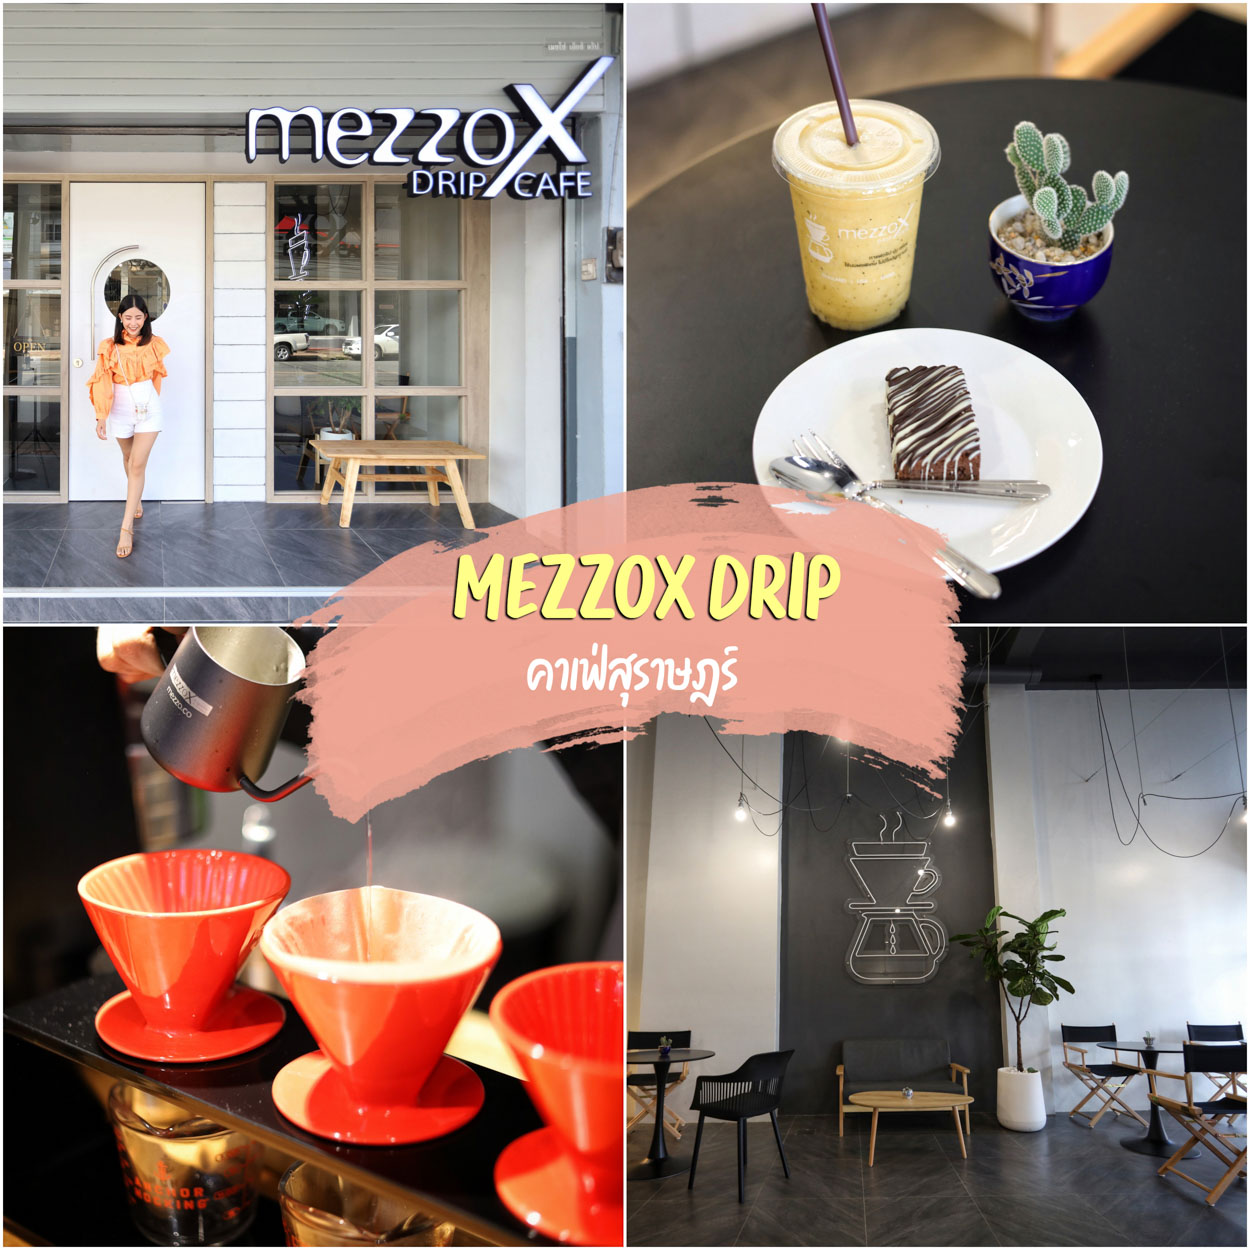 MezzoX Drip Cafe Suratthani คาเฟ่ใจกลางเมืองสุราษฎร์ธานี ถนนตลาดใหม่